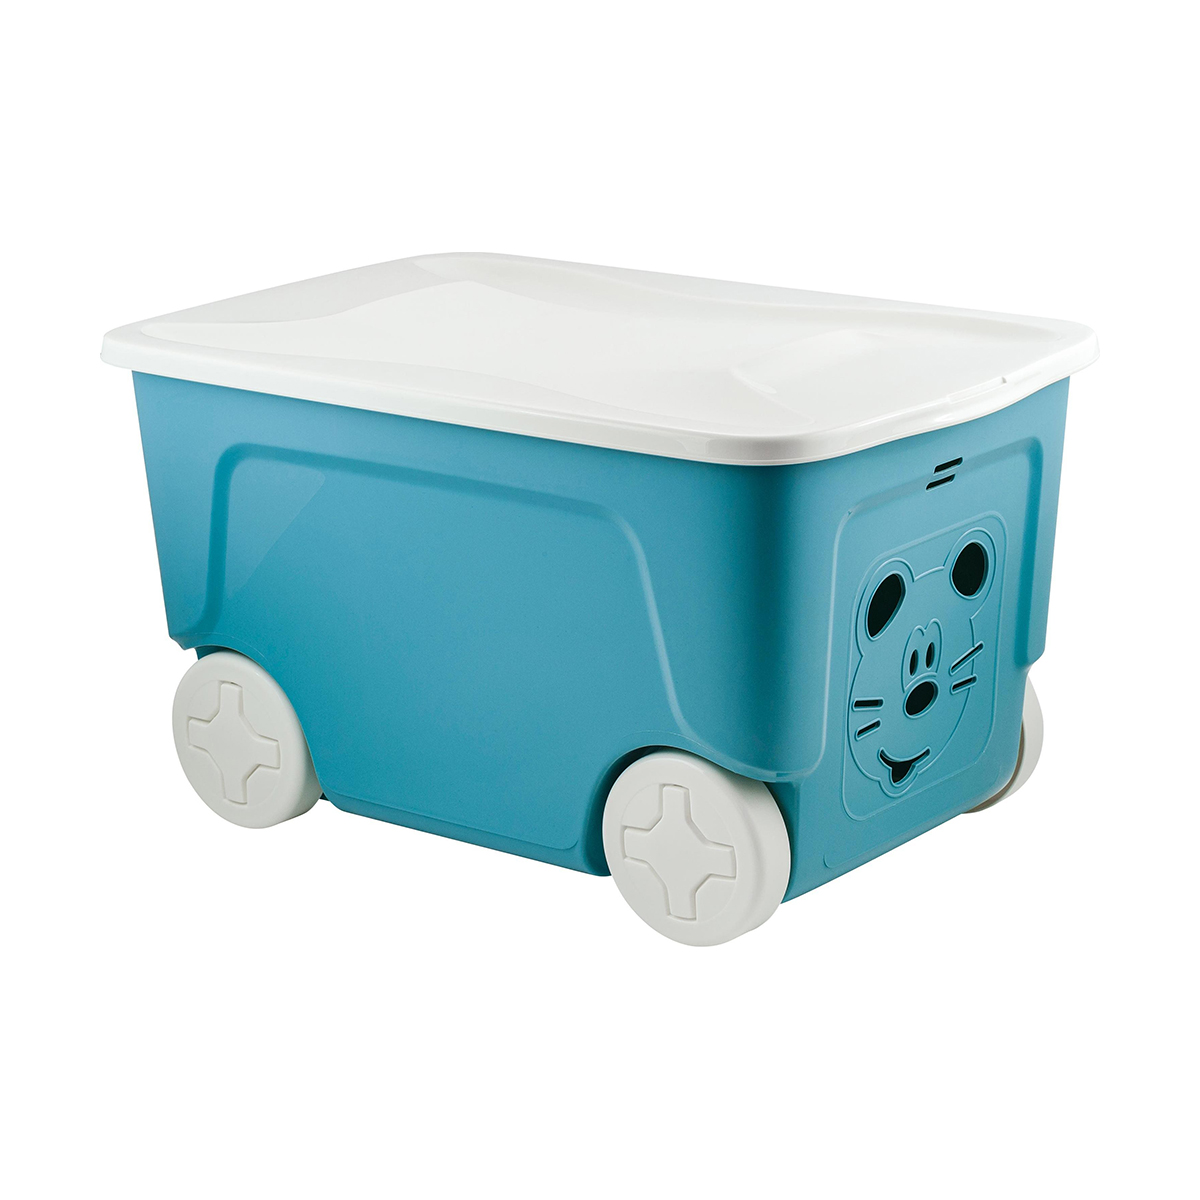 Ящик для игрушек на колесах Lalababy Play with Me, 59 x 38,3 x 33 см, 50 л, синий колокол детский ящик для игрушек cool на колёсах 50 литров синий колокольчик